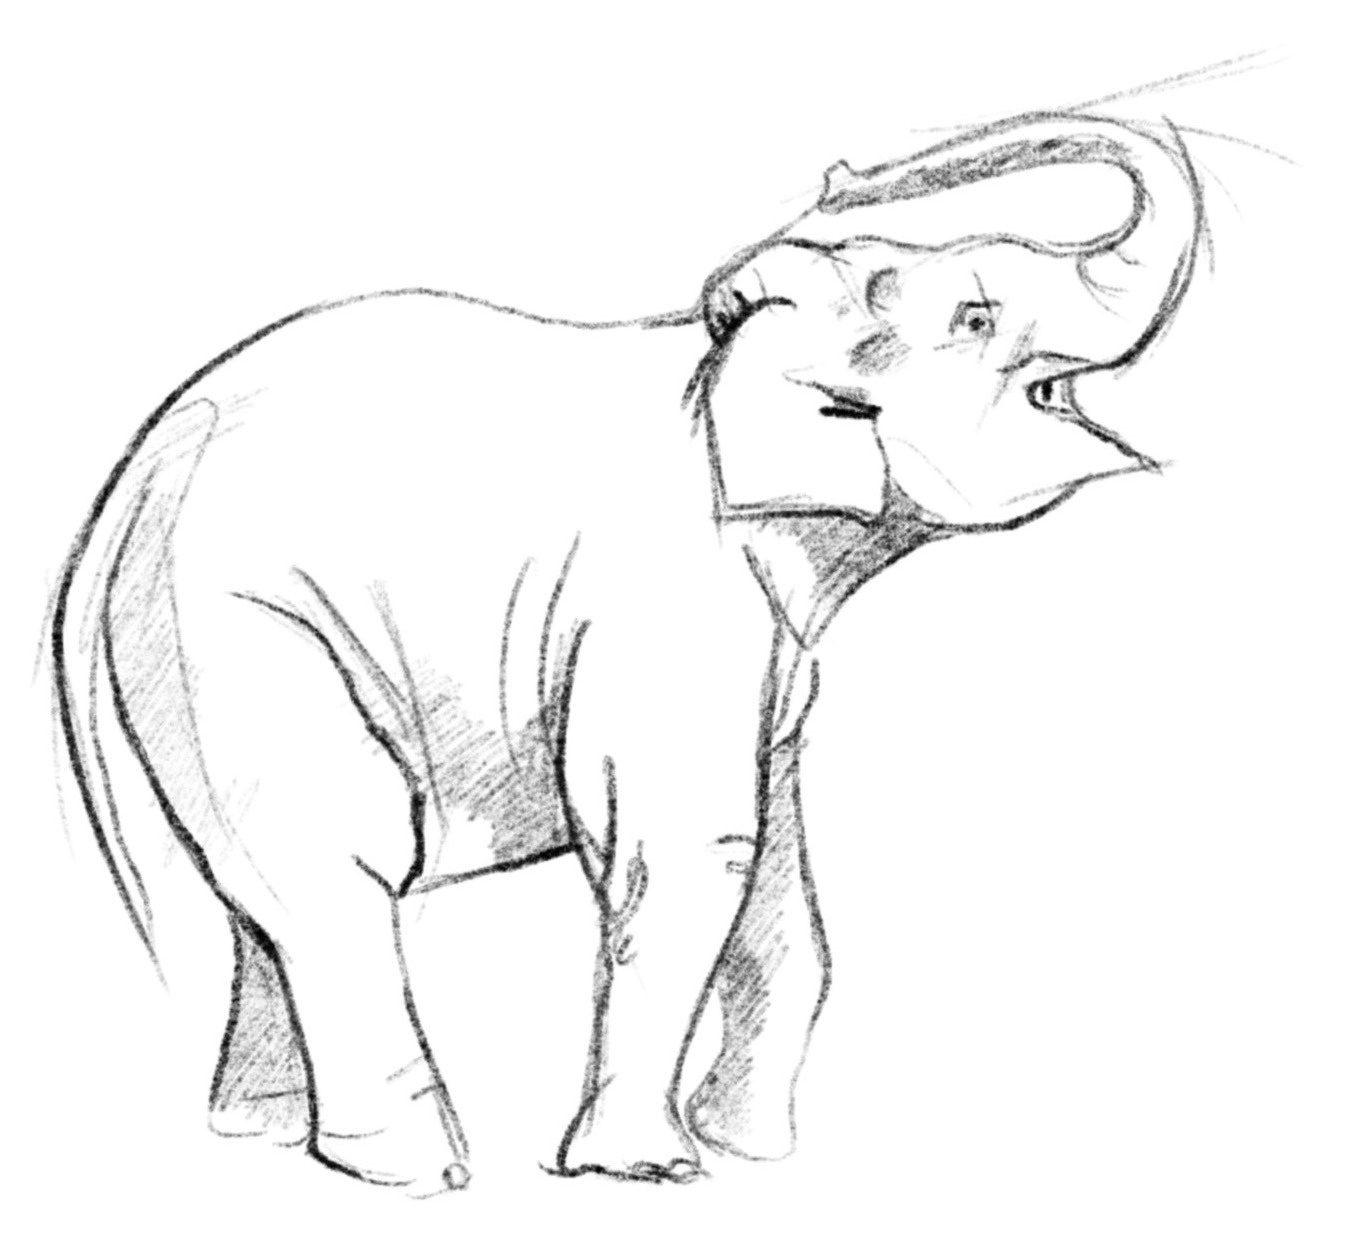 elifant-klein